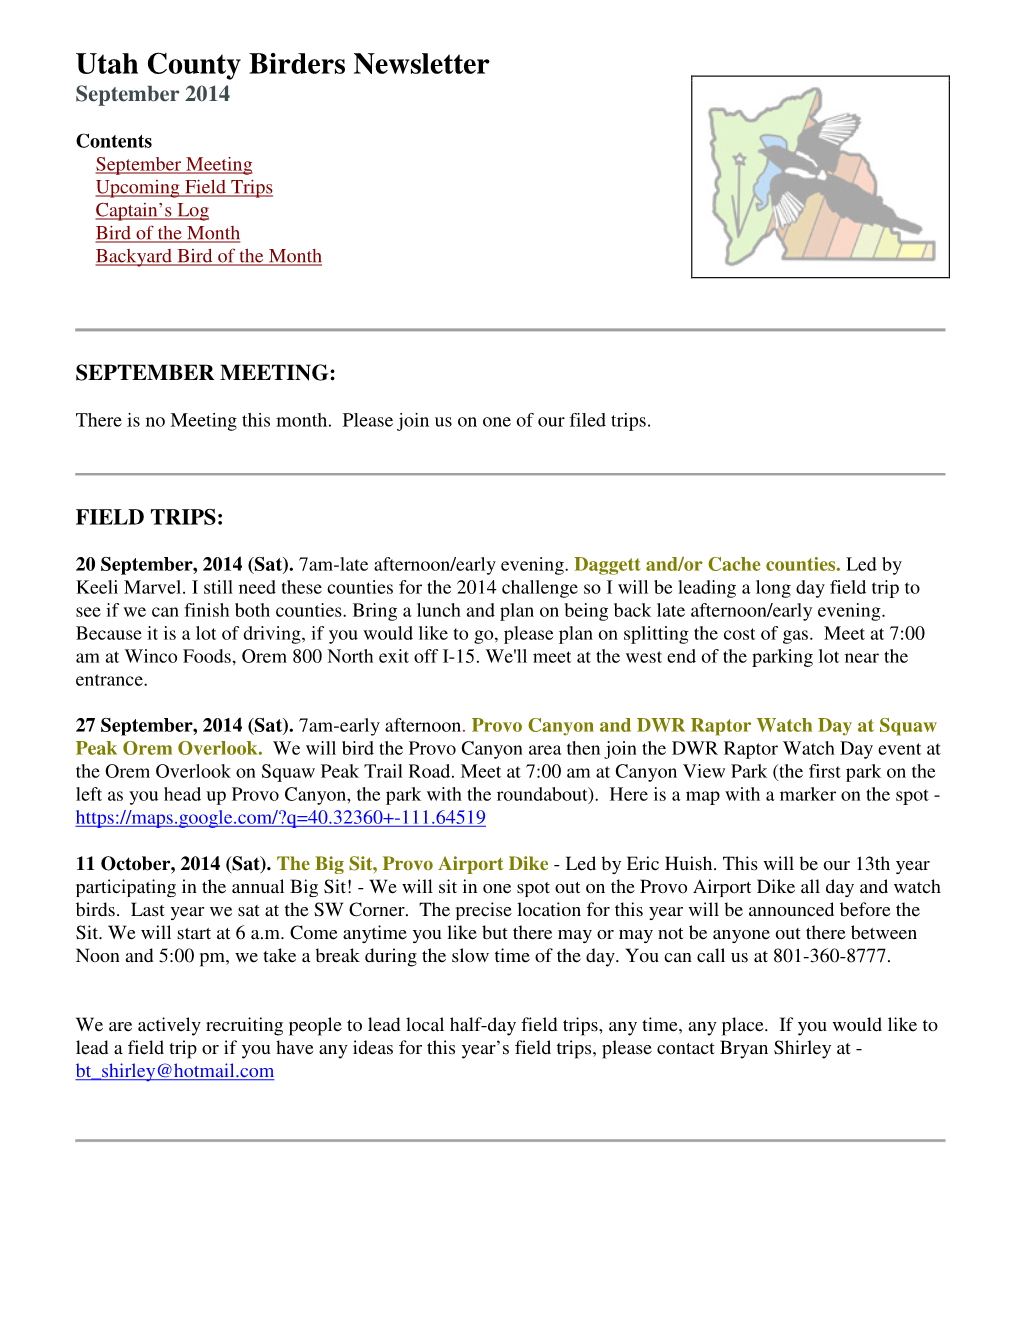 Utah County Birders Newsletter September 2014